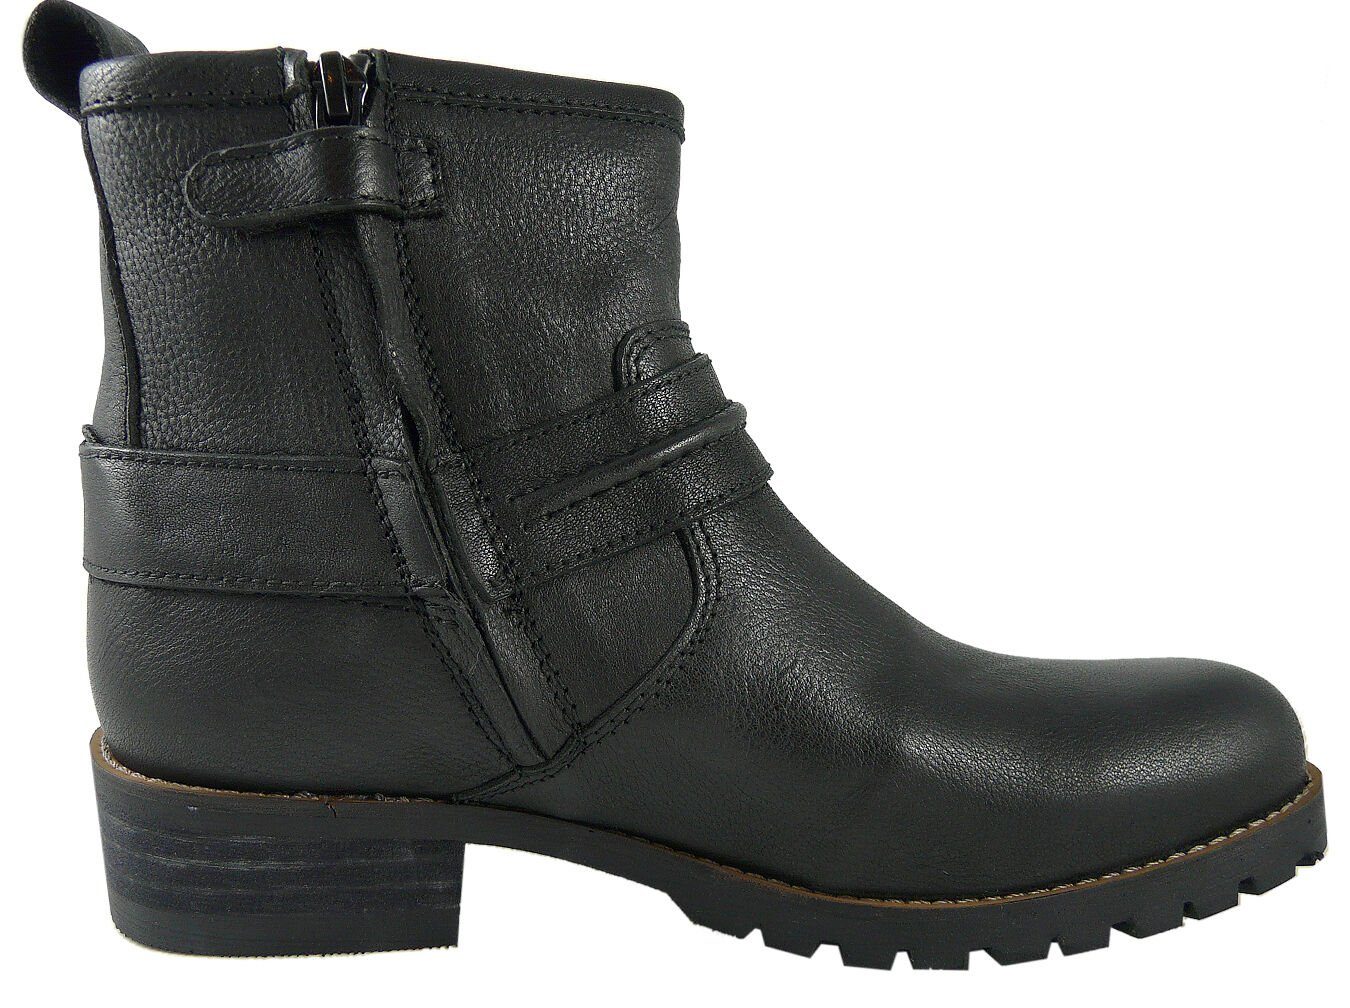 Clic Clic! Stiefel CL-8601 Schnürstiefelette Stiefeletten schmal Leder Schuhe schwarz